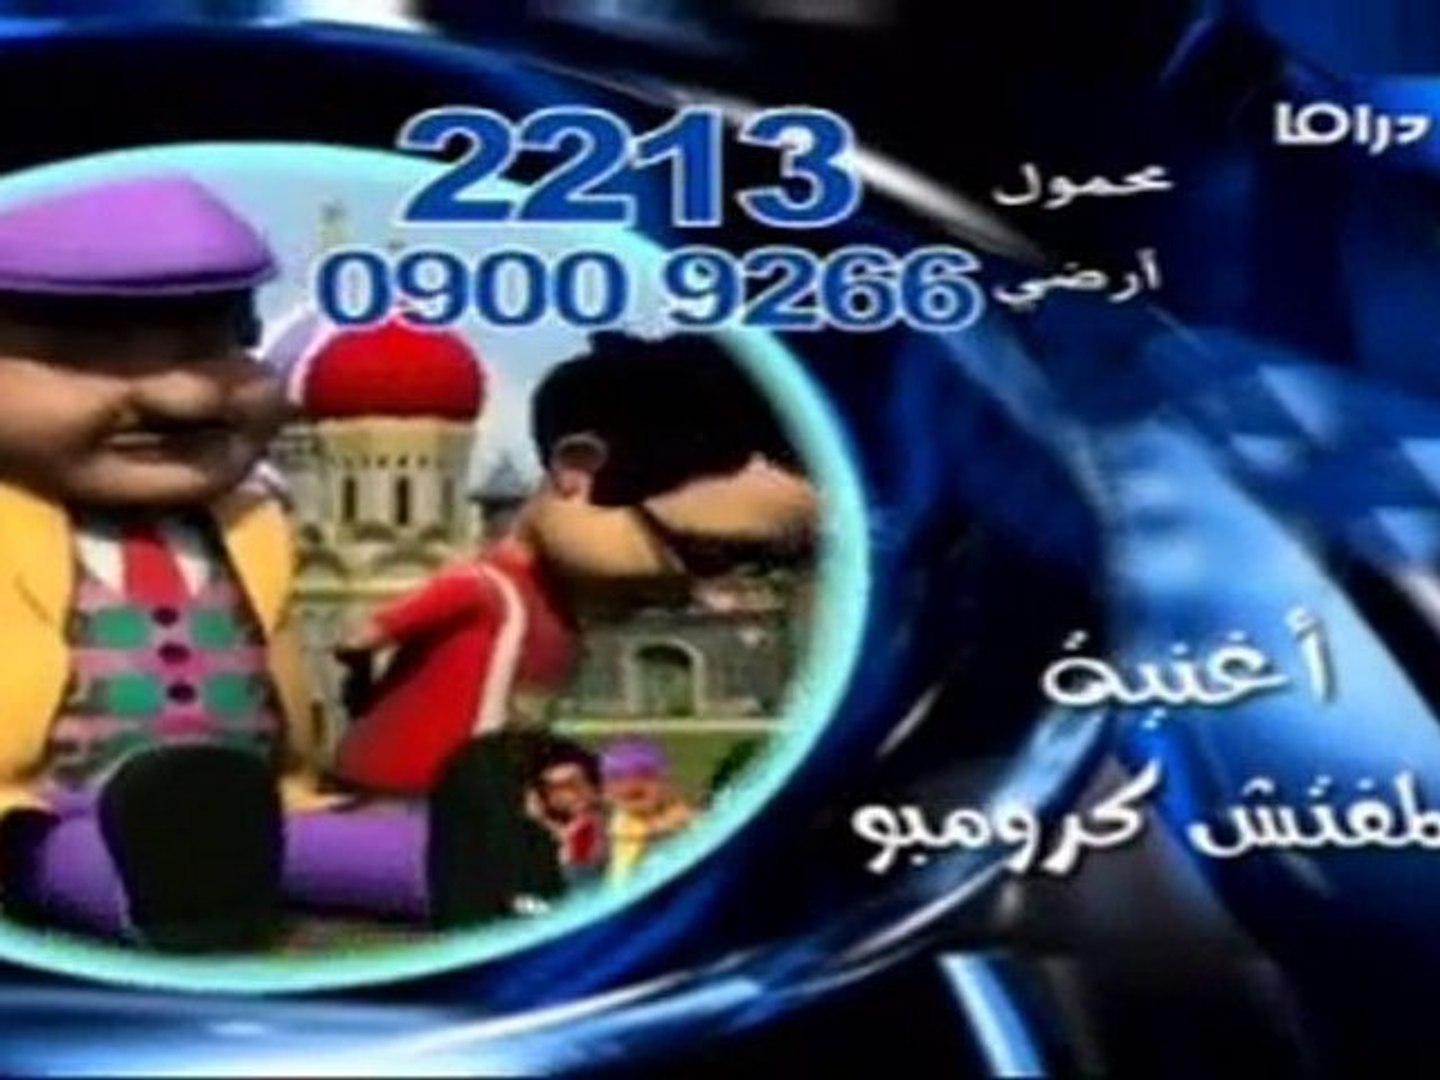 الحلقة (10) مسلسل يوميات المفتش كرومبو ج2 رمضان 2010 - فيديو Dailymotion